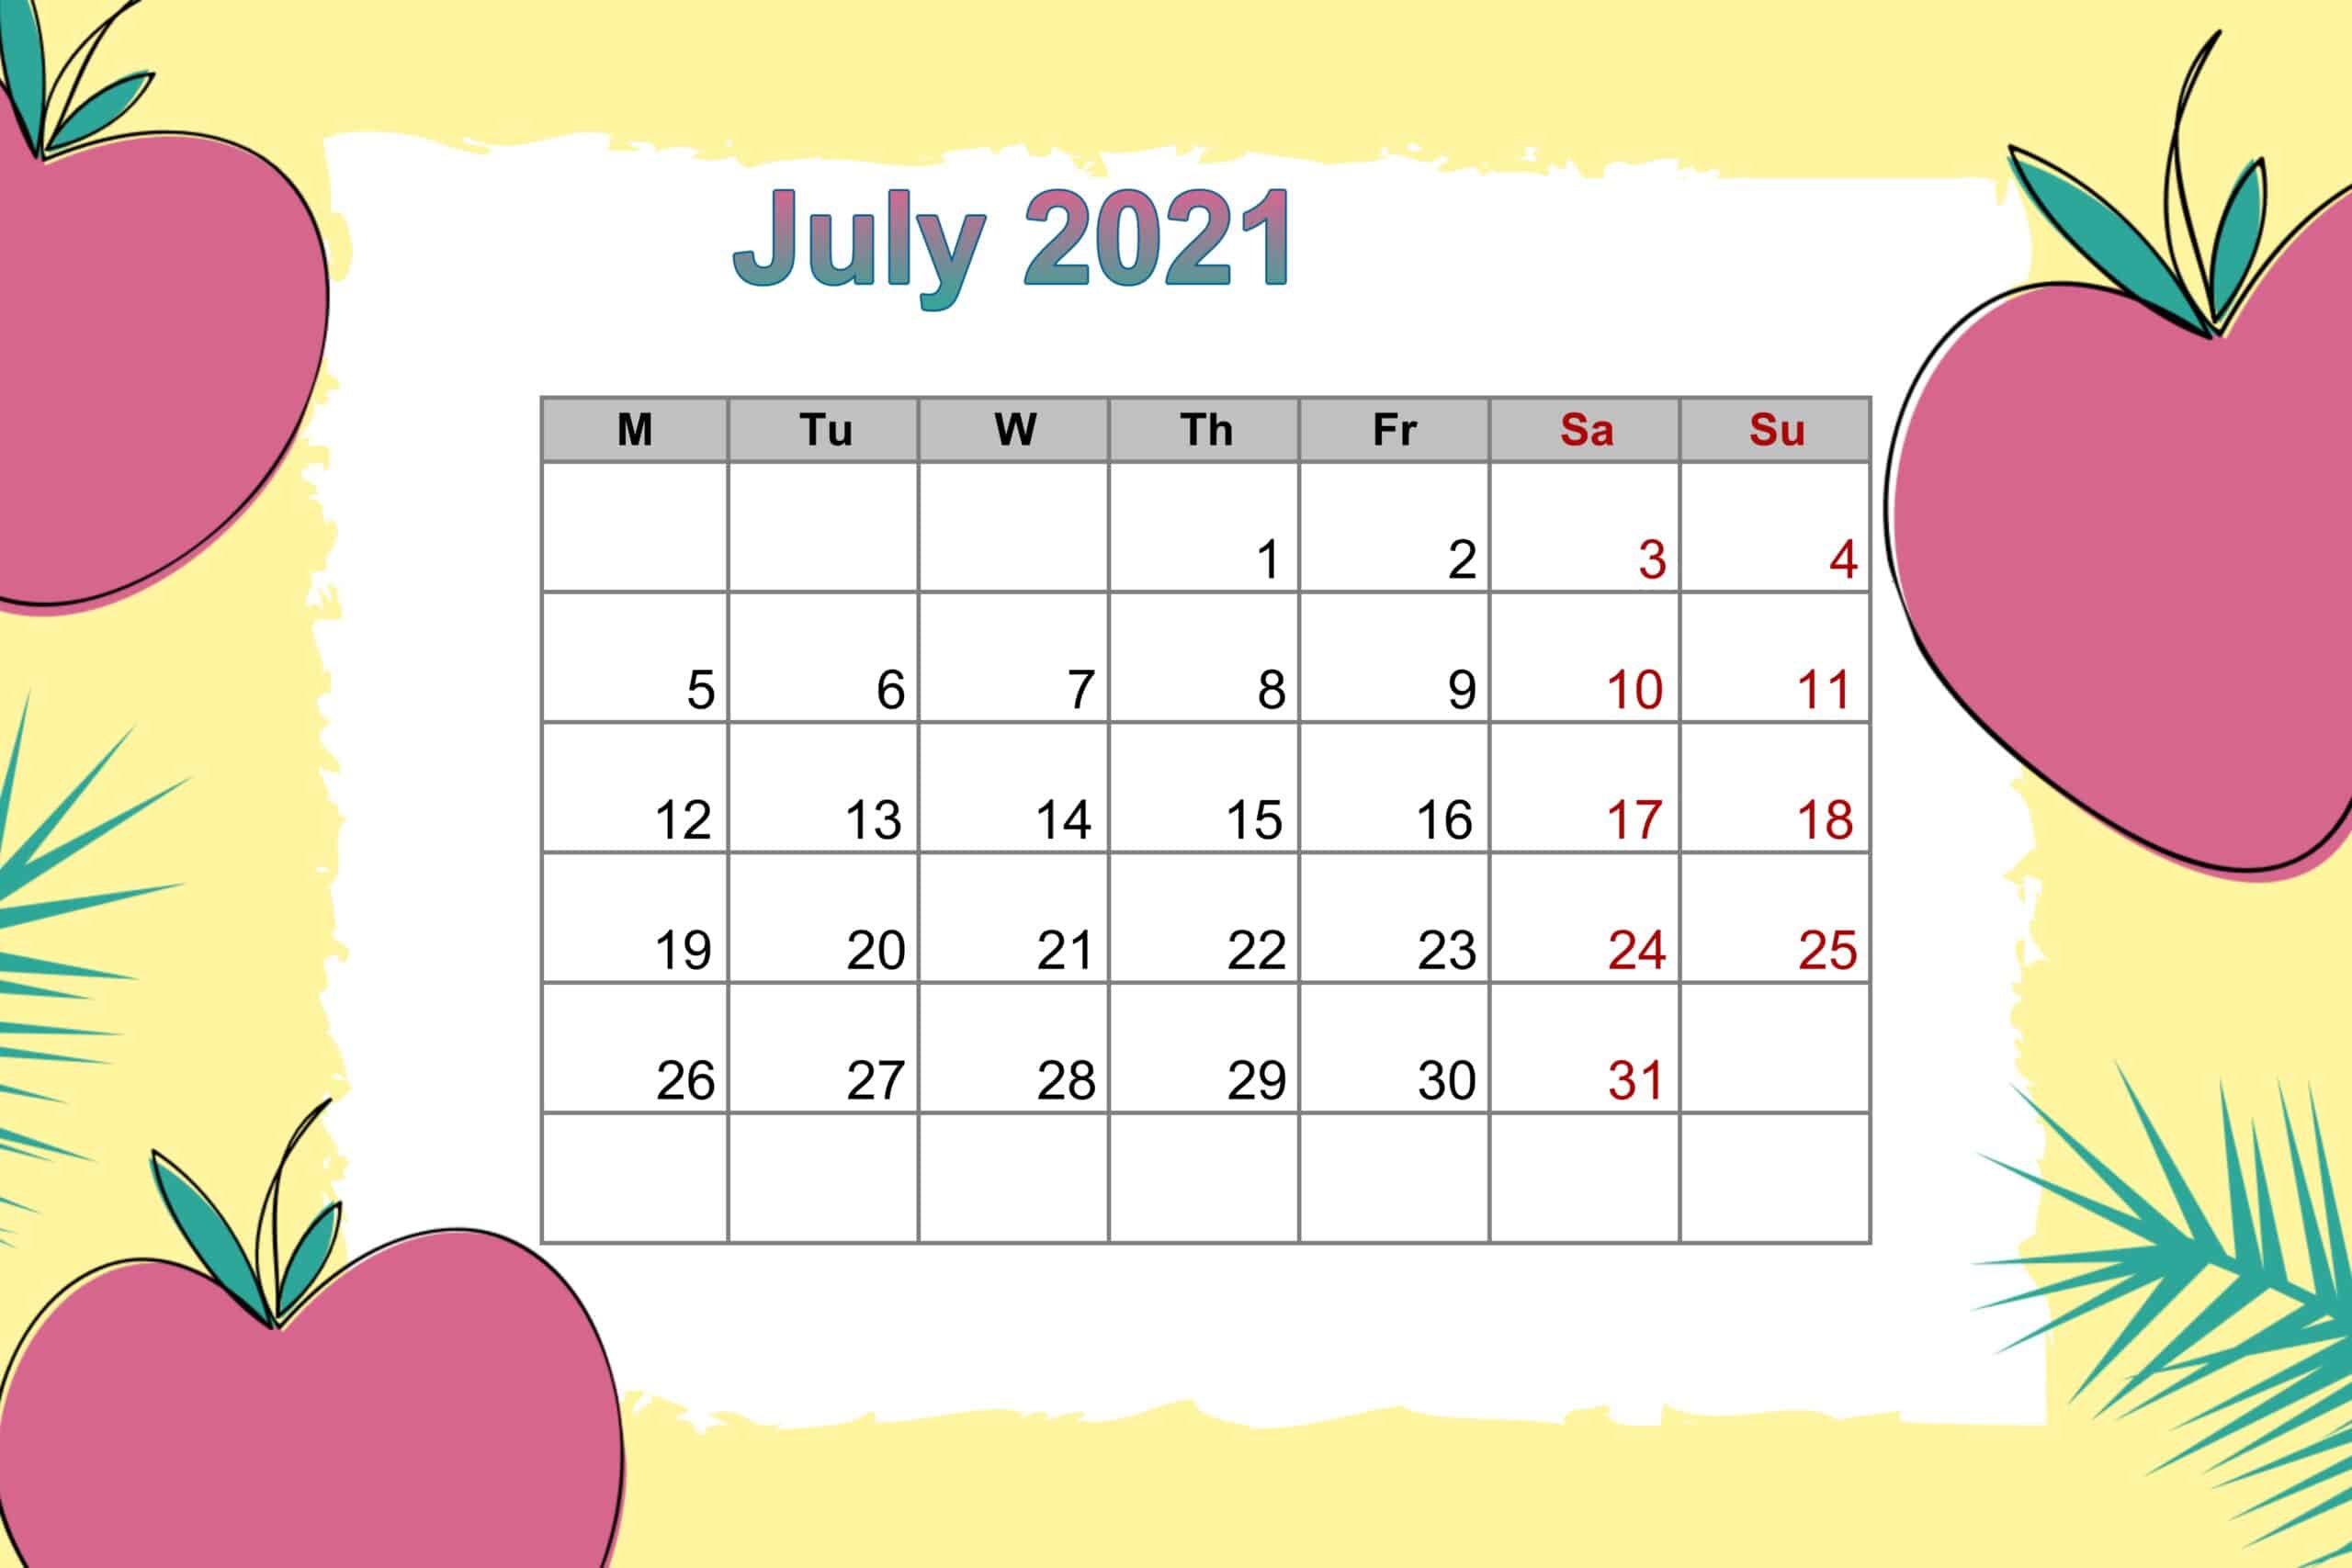 July 2021 Floral Calendar